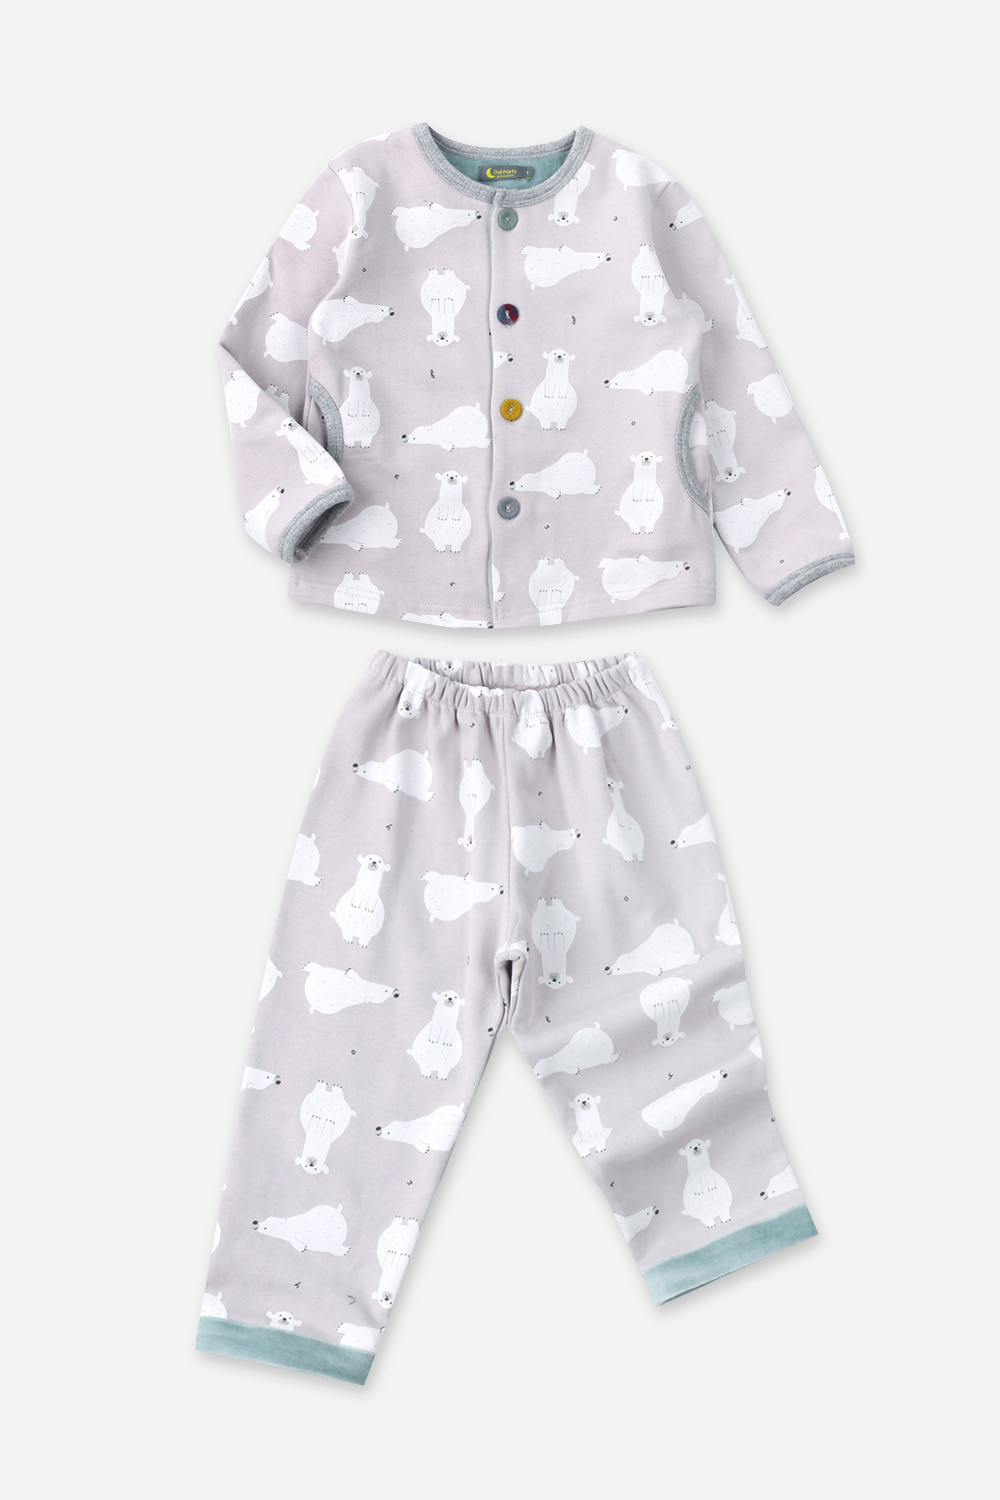 북극곰이야기잠옷, 홈웨어, 아동내복, 아동속옷,성인잠옷,고후나비